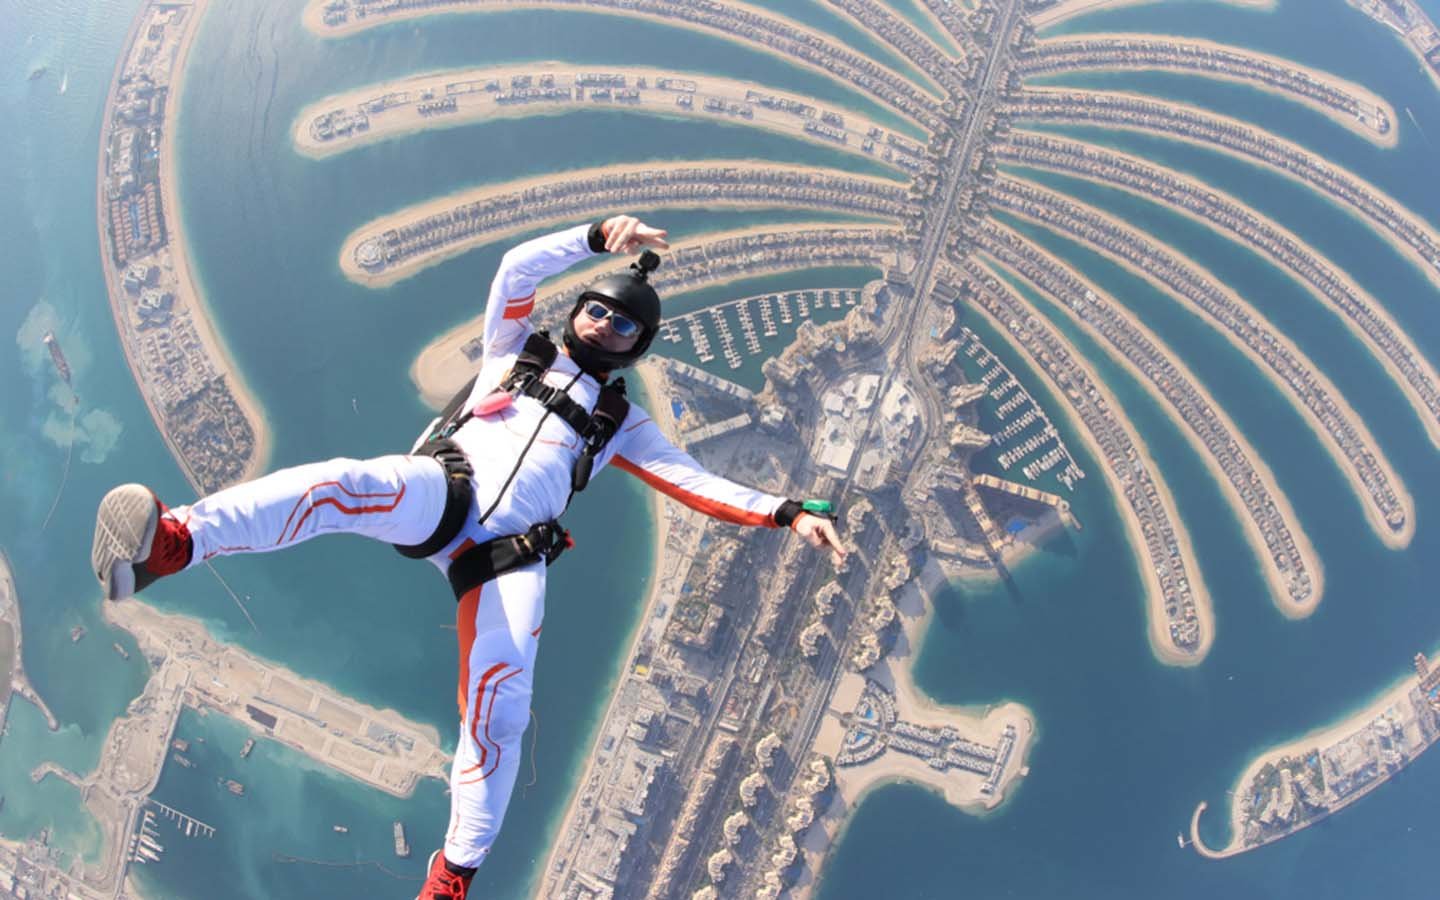 Дубай страховка нужна. Скайдайвинг Дубай. Skydive Dubai Пальма. Прыжок с парашютом в Дубаях на пальму. Полет с парашюта Дубай.